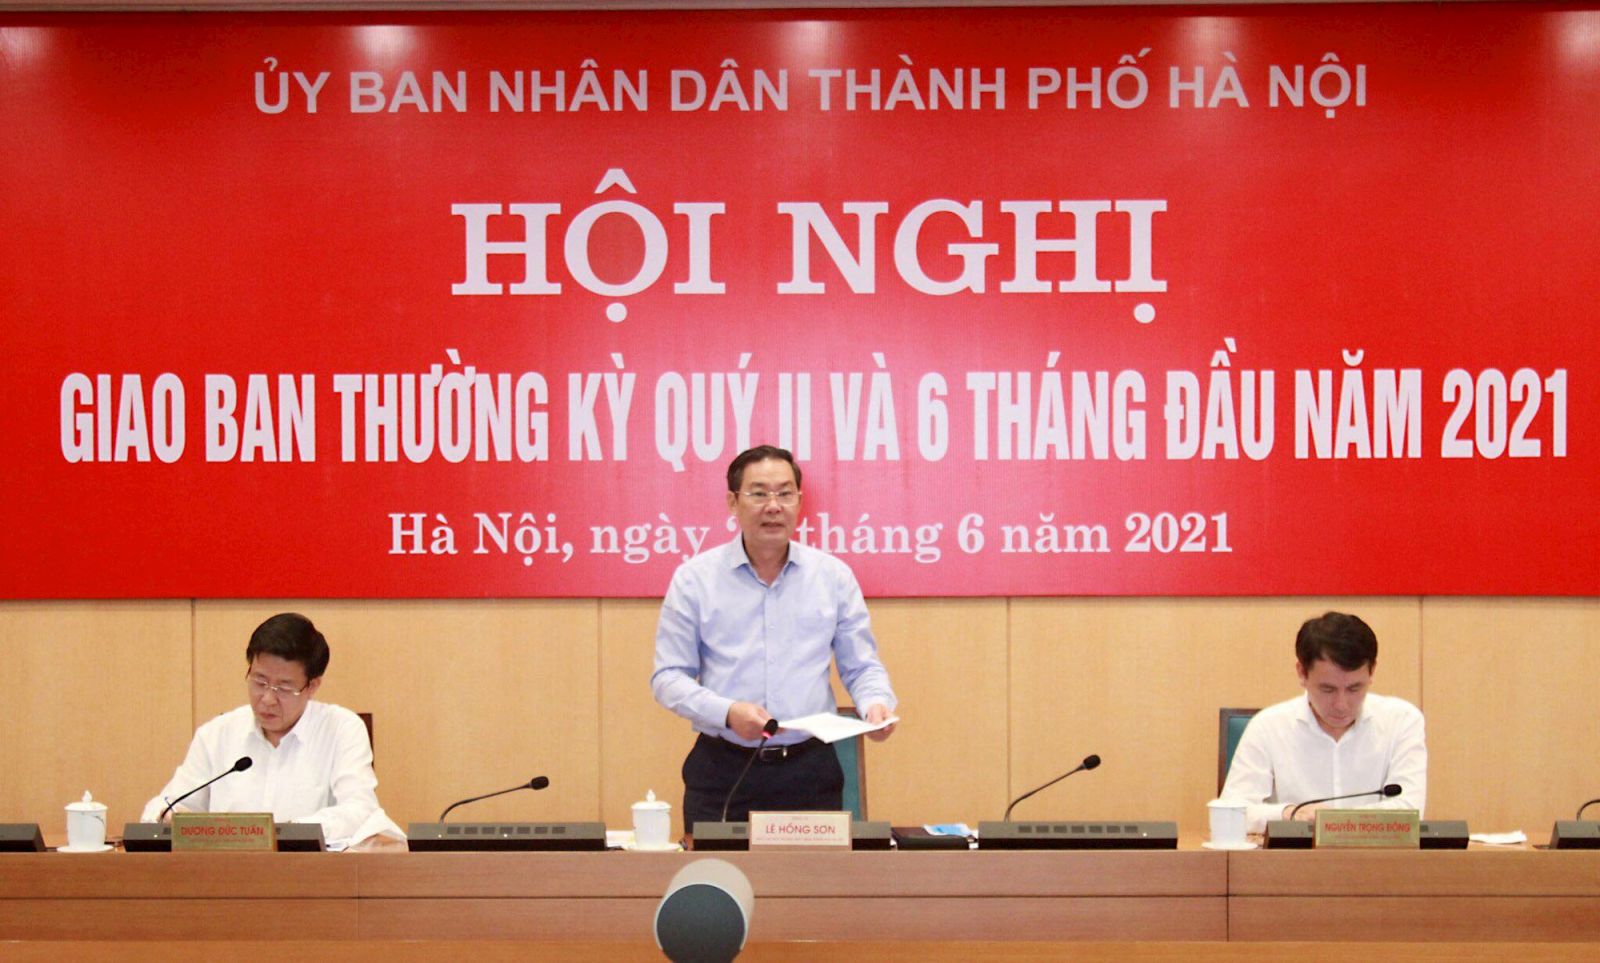 Phó Chủ tịch UBND TP. Hà Nội Lê Hồng Sơn phát biểu tại hội nghị.